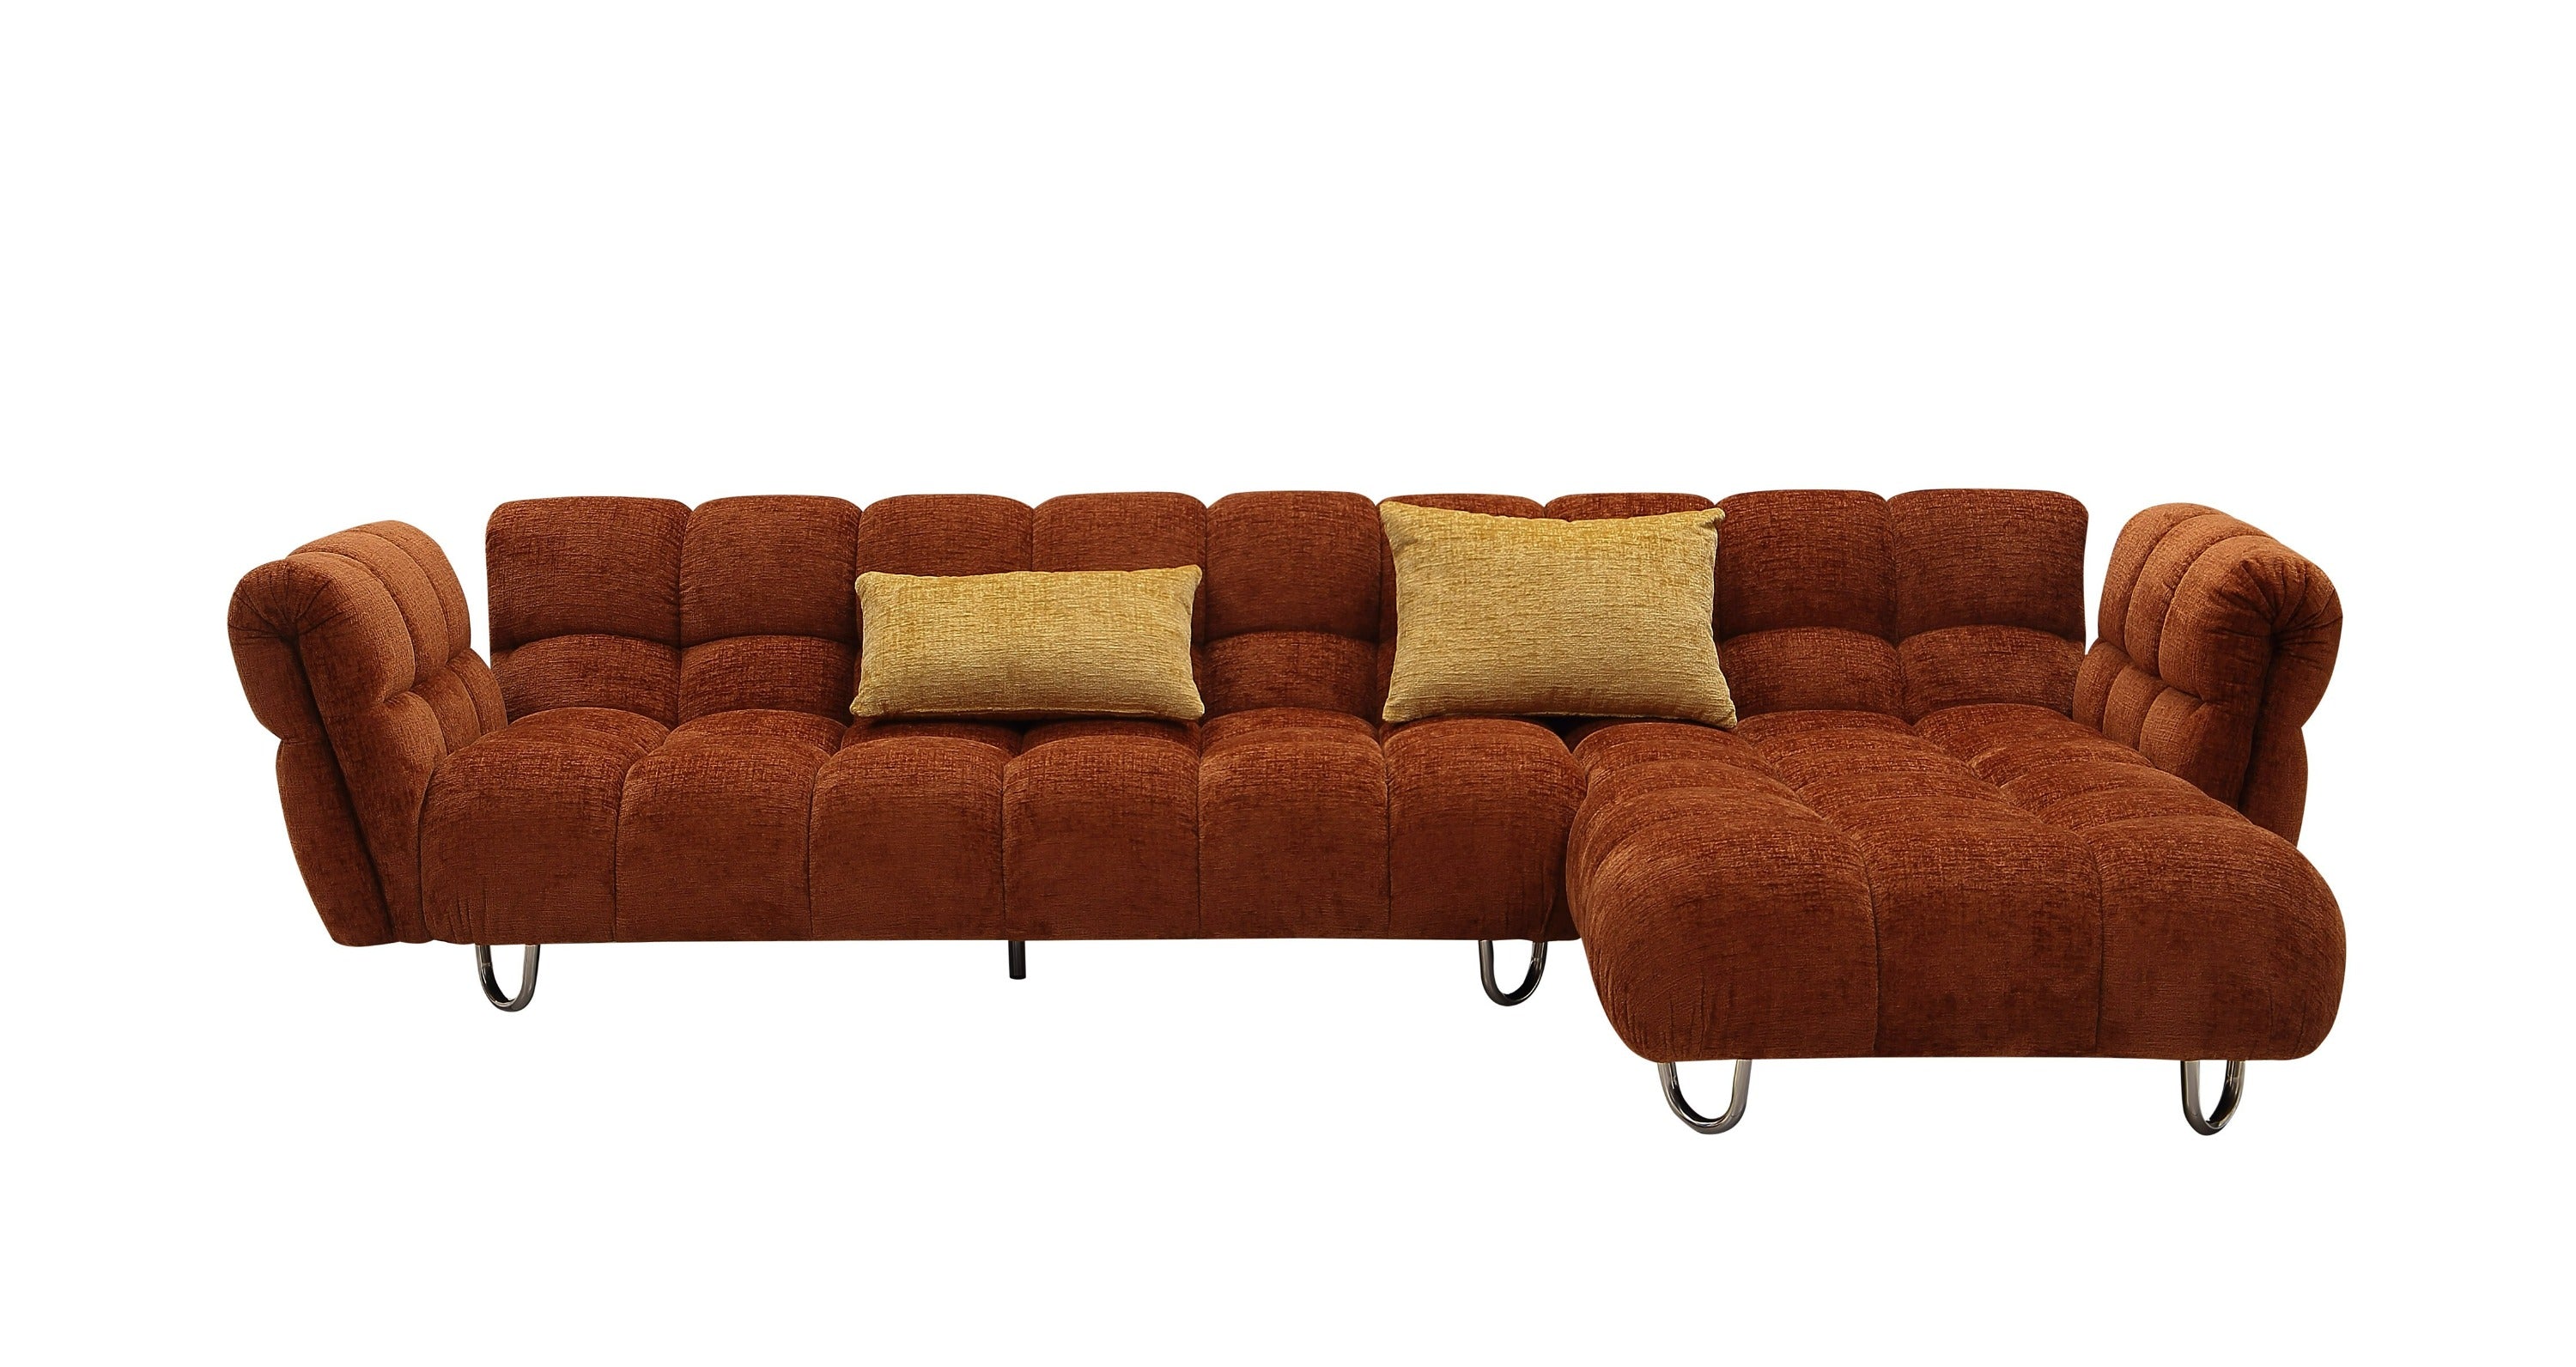 Vig Furniture Divani Casa Jacinda - Modern Burnt Orange Fabric Right Facing Sectional Sofa + 2 Yellow Pillows